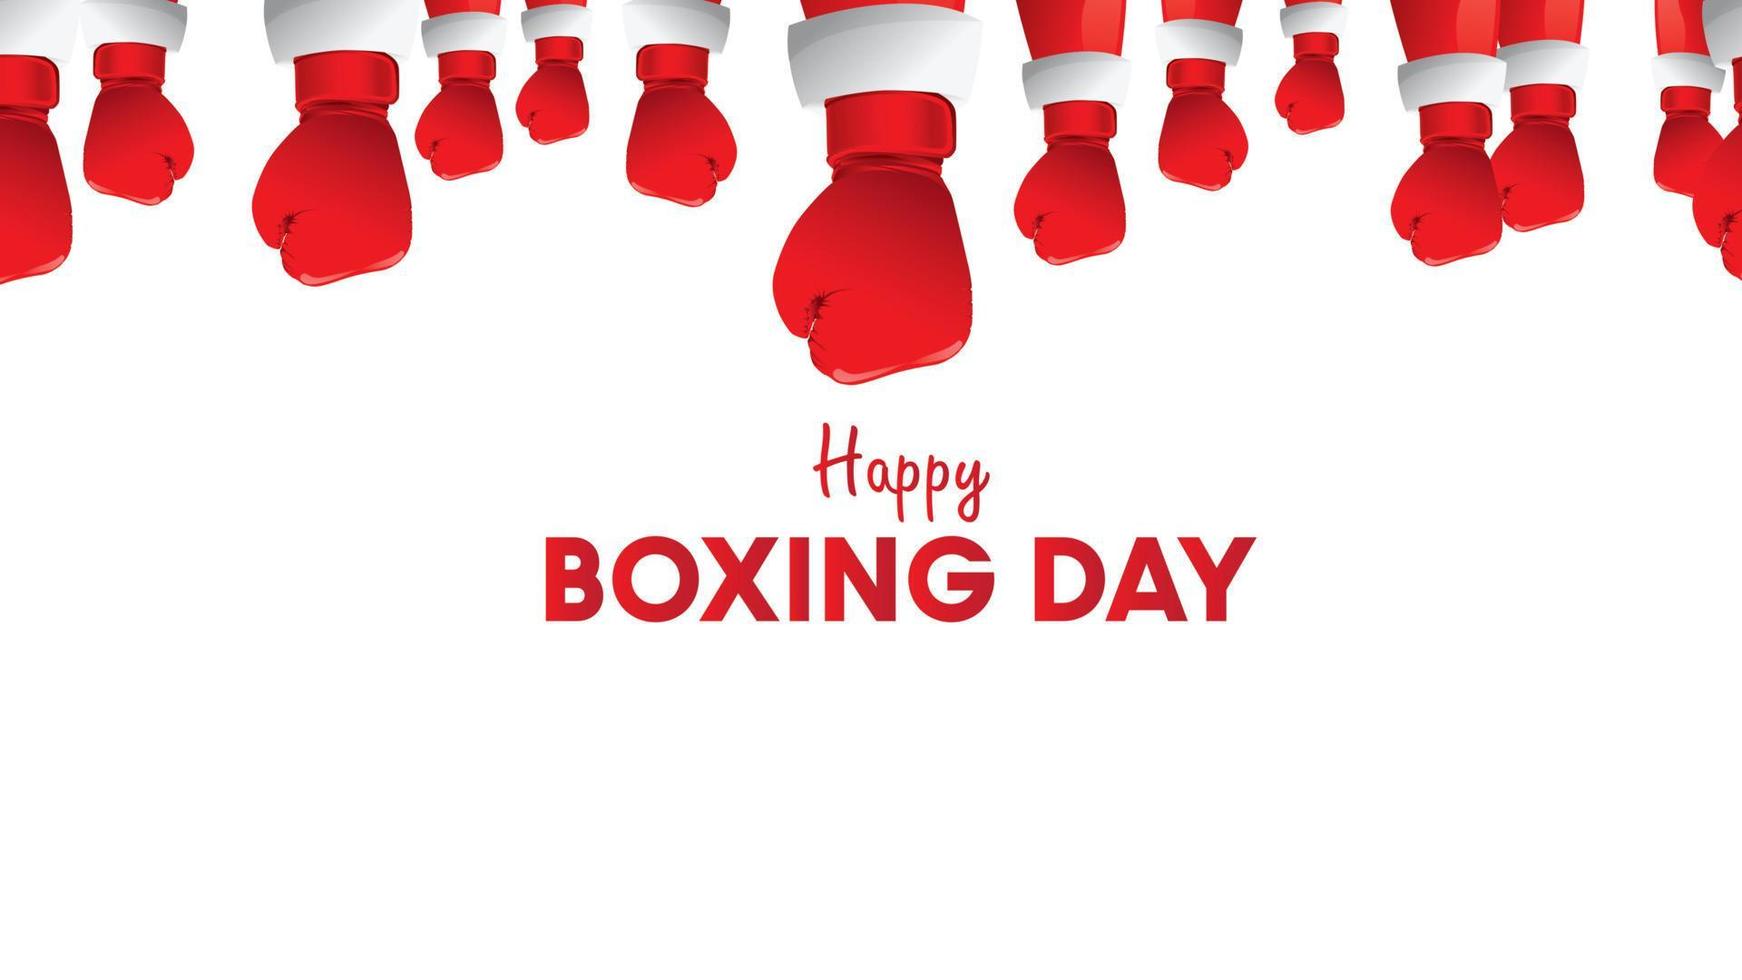 boxing day vector illustration.typography combiné en forme de gants de boxe